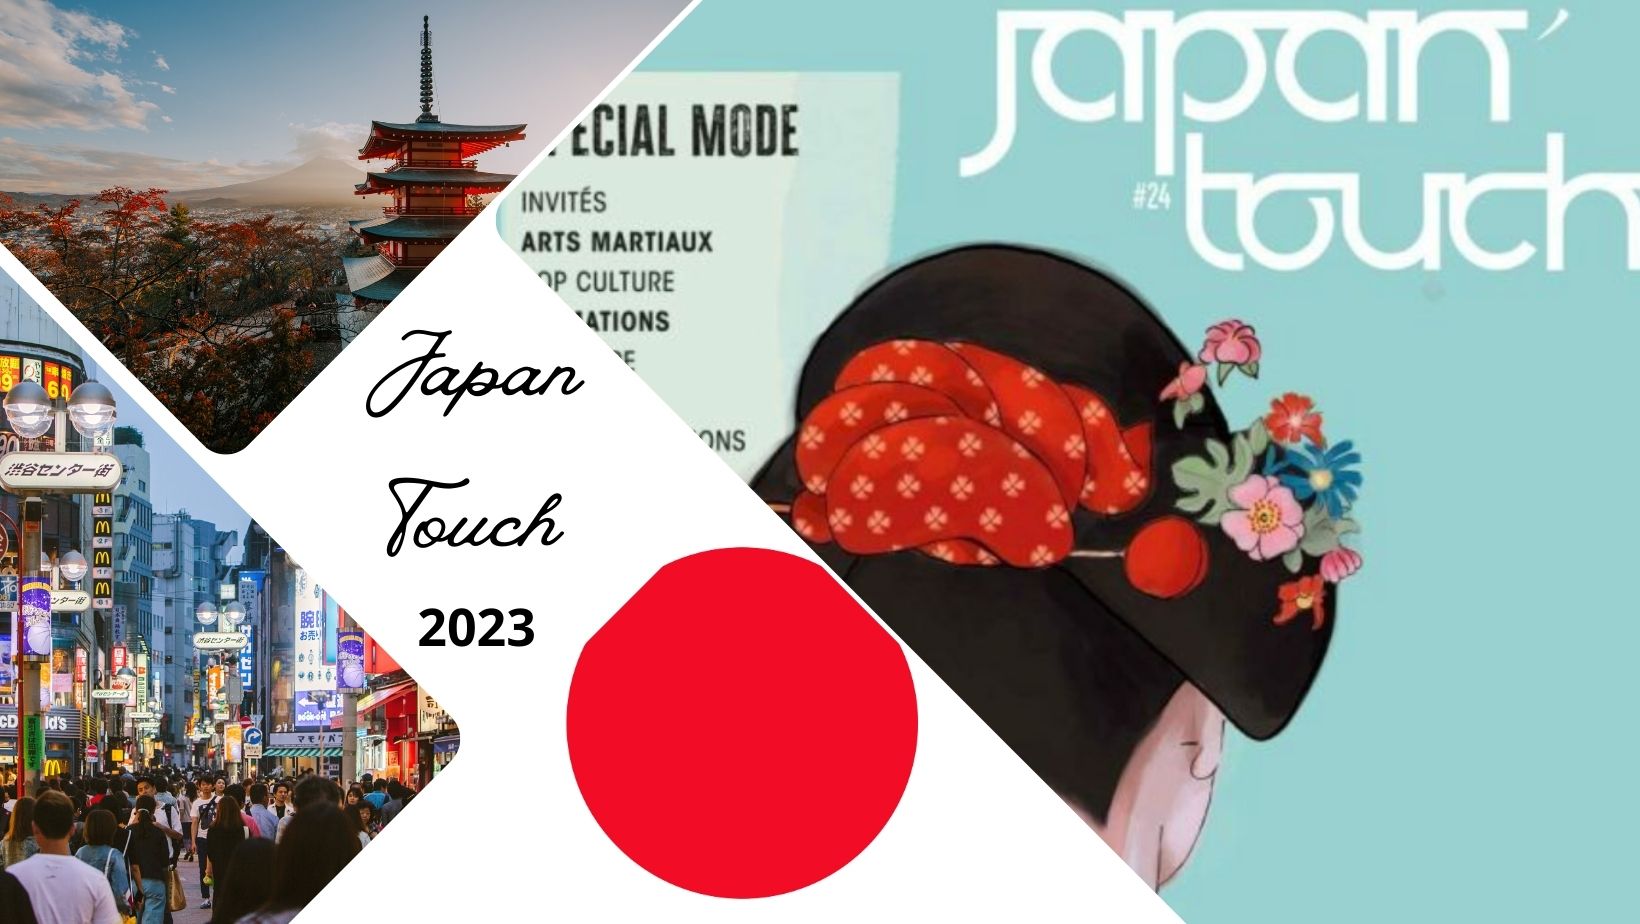 Japan Touch 2023 à Lyon Eurexpo : dates, billetterie, programme et tarifs